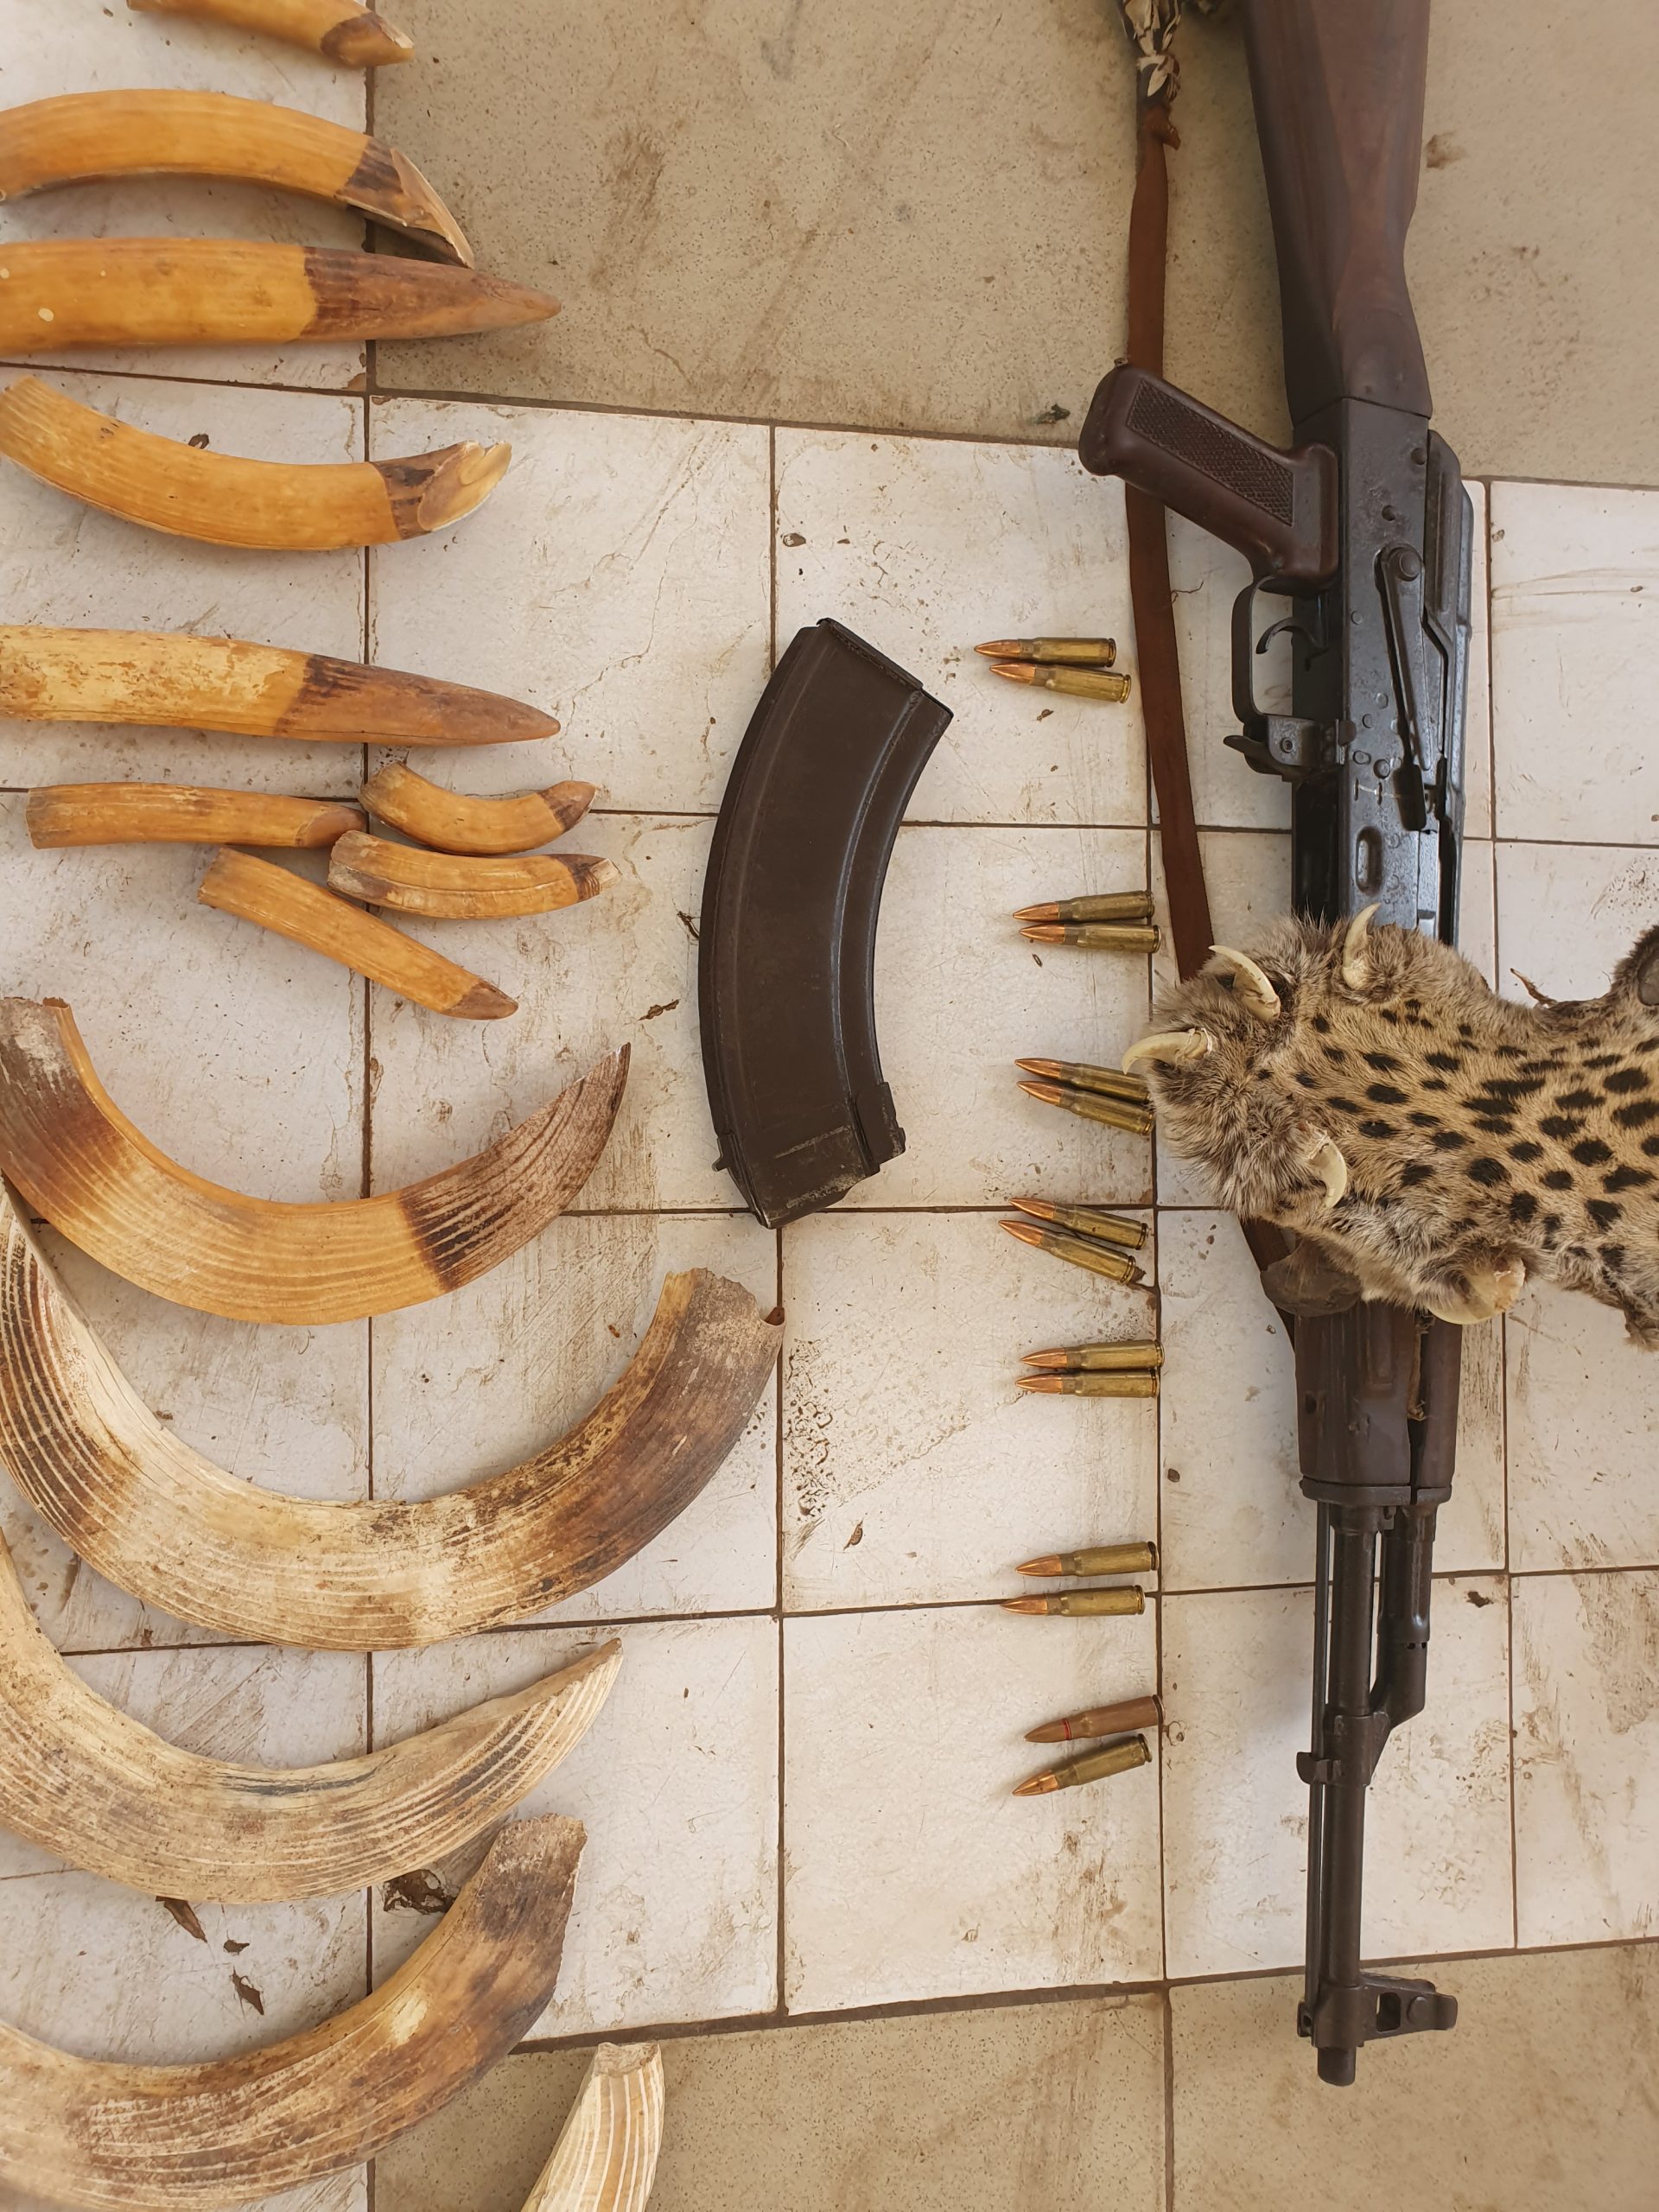 CRIMINALITE FAUNIQUE : Trafic de faune et d’arme de guerre, peine de prison ferme pour des trafiquants de Tambacounda